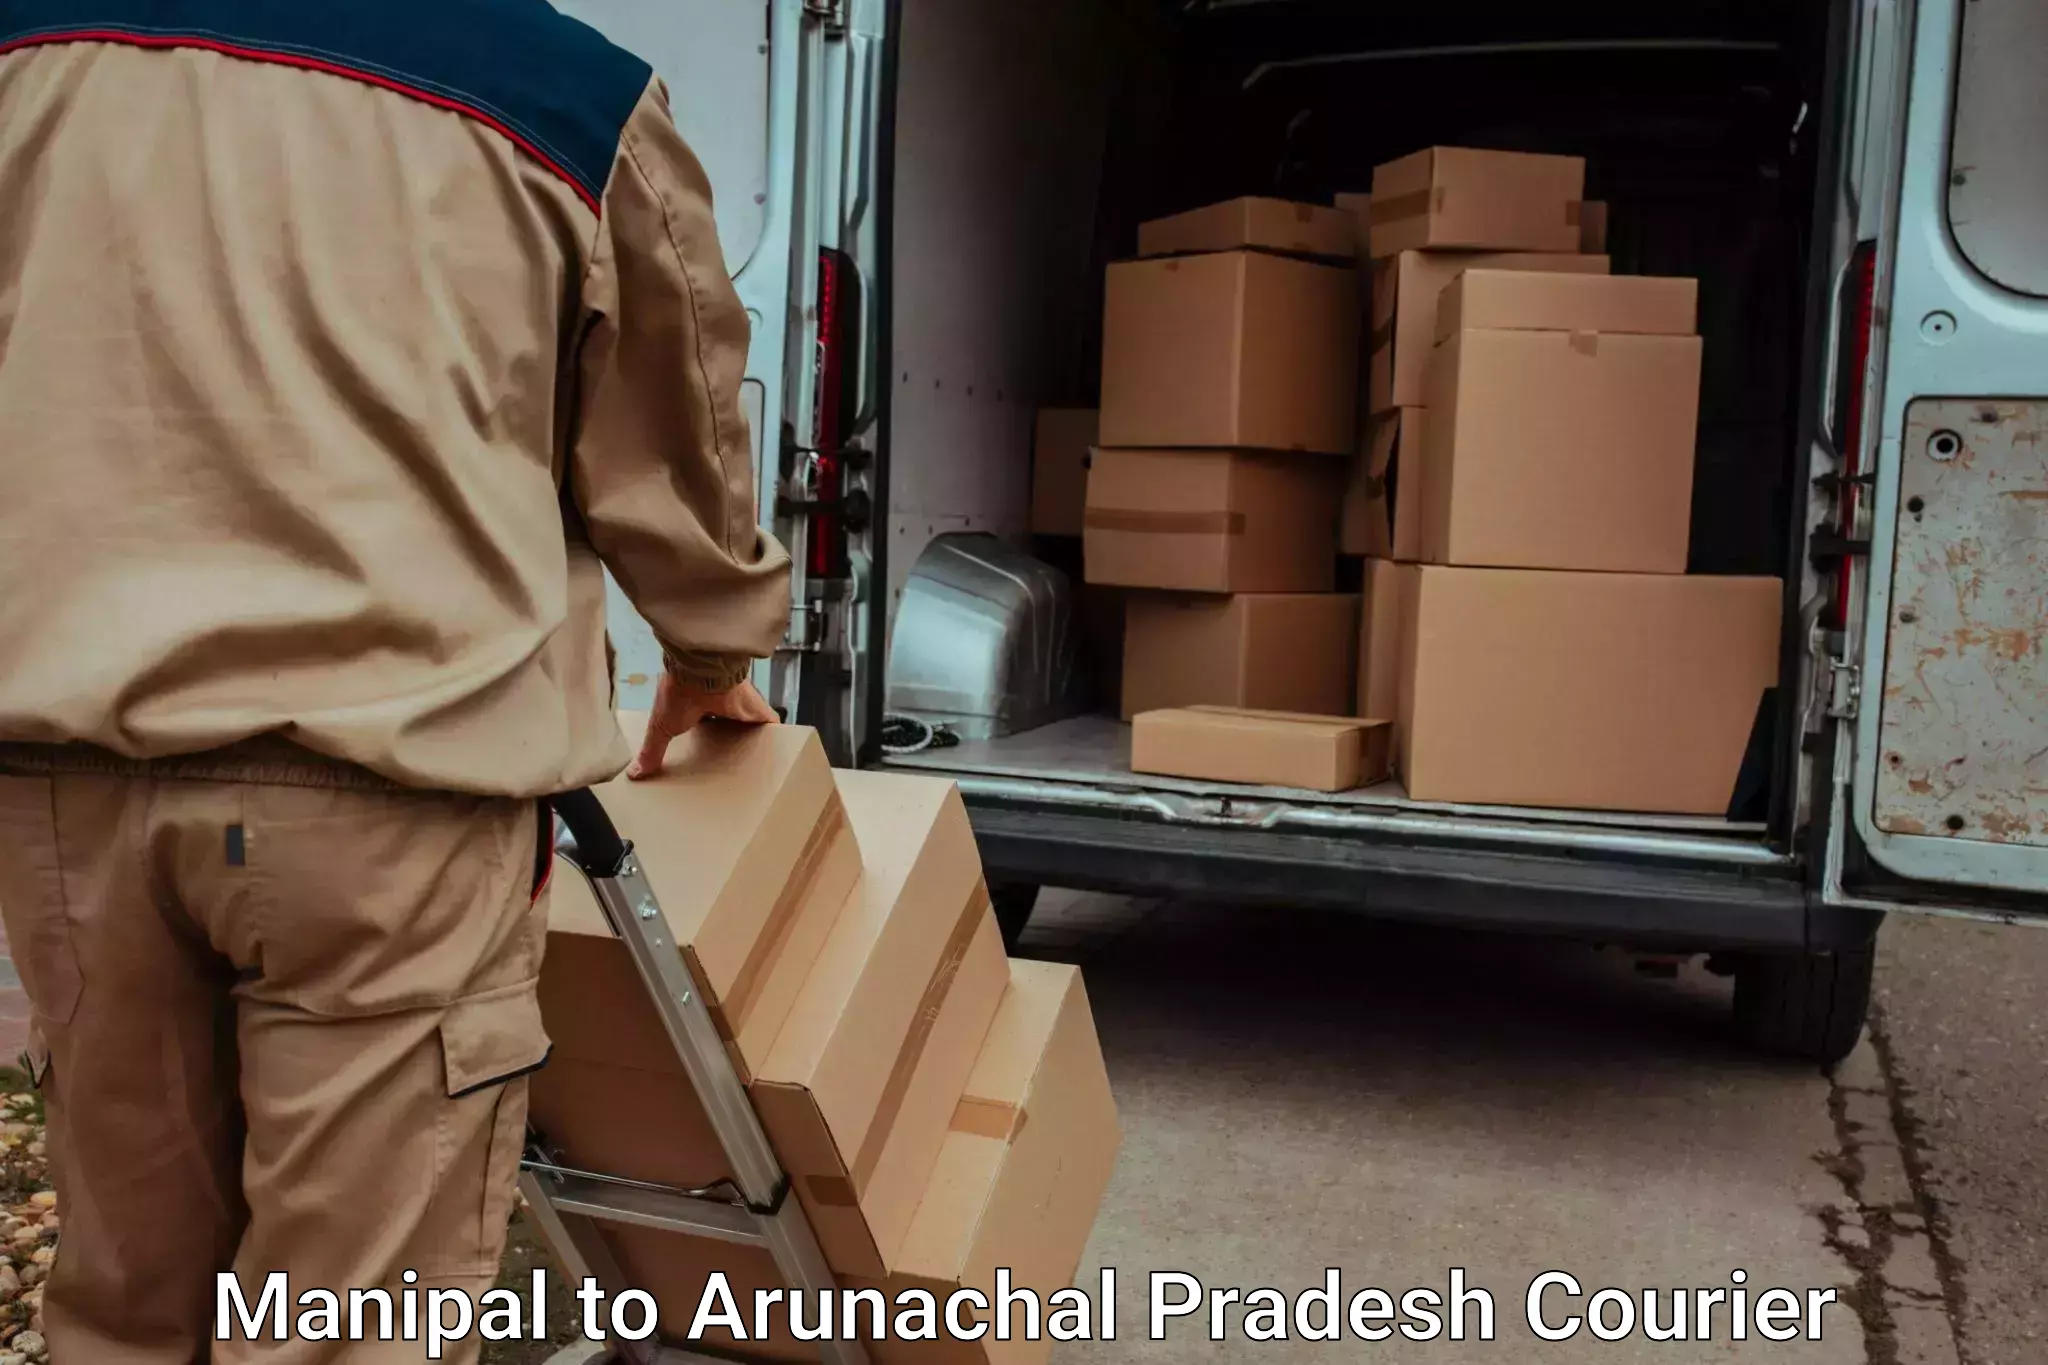 Furniture transport experts Manipal to Arunachal Pradesh